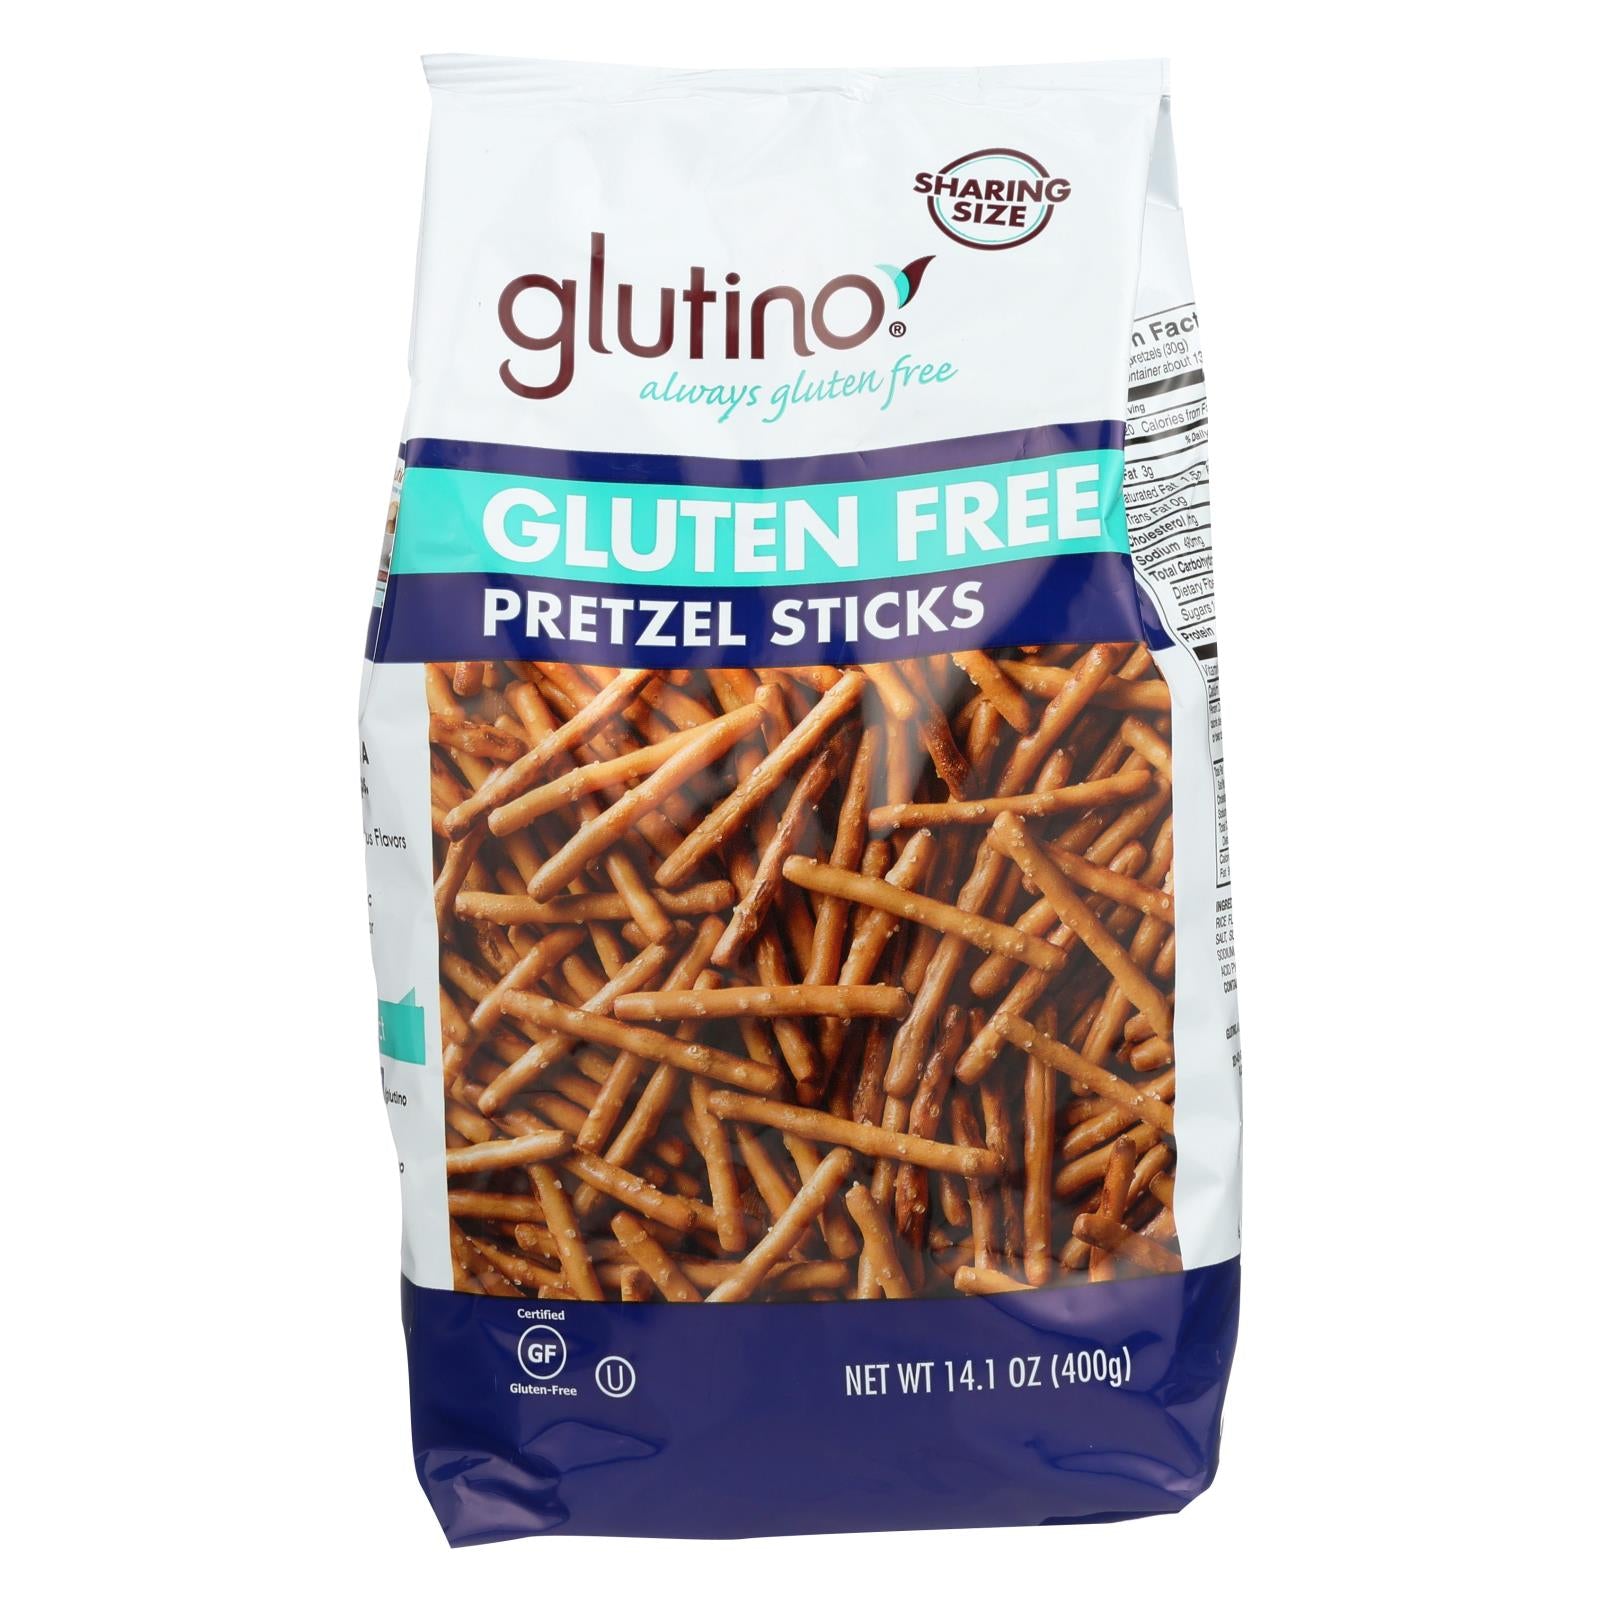 Glutino Pretzels Sticks - Case of 12